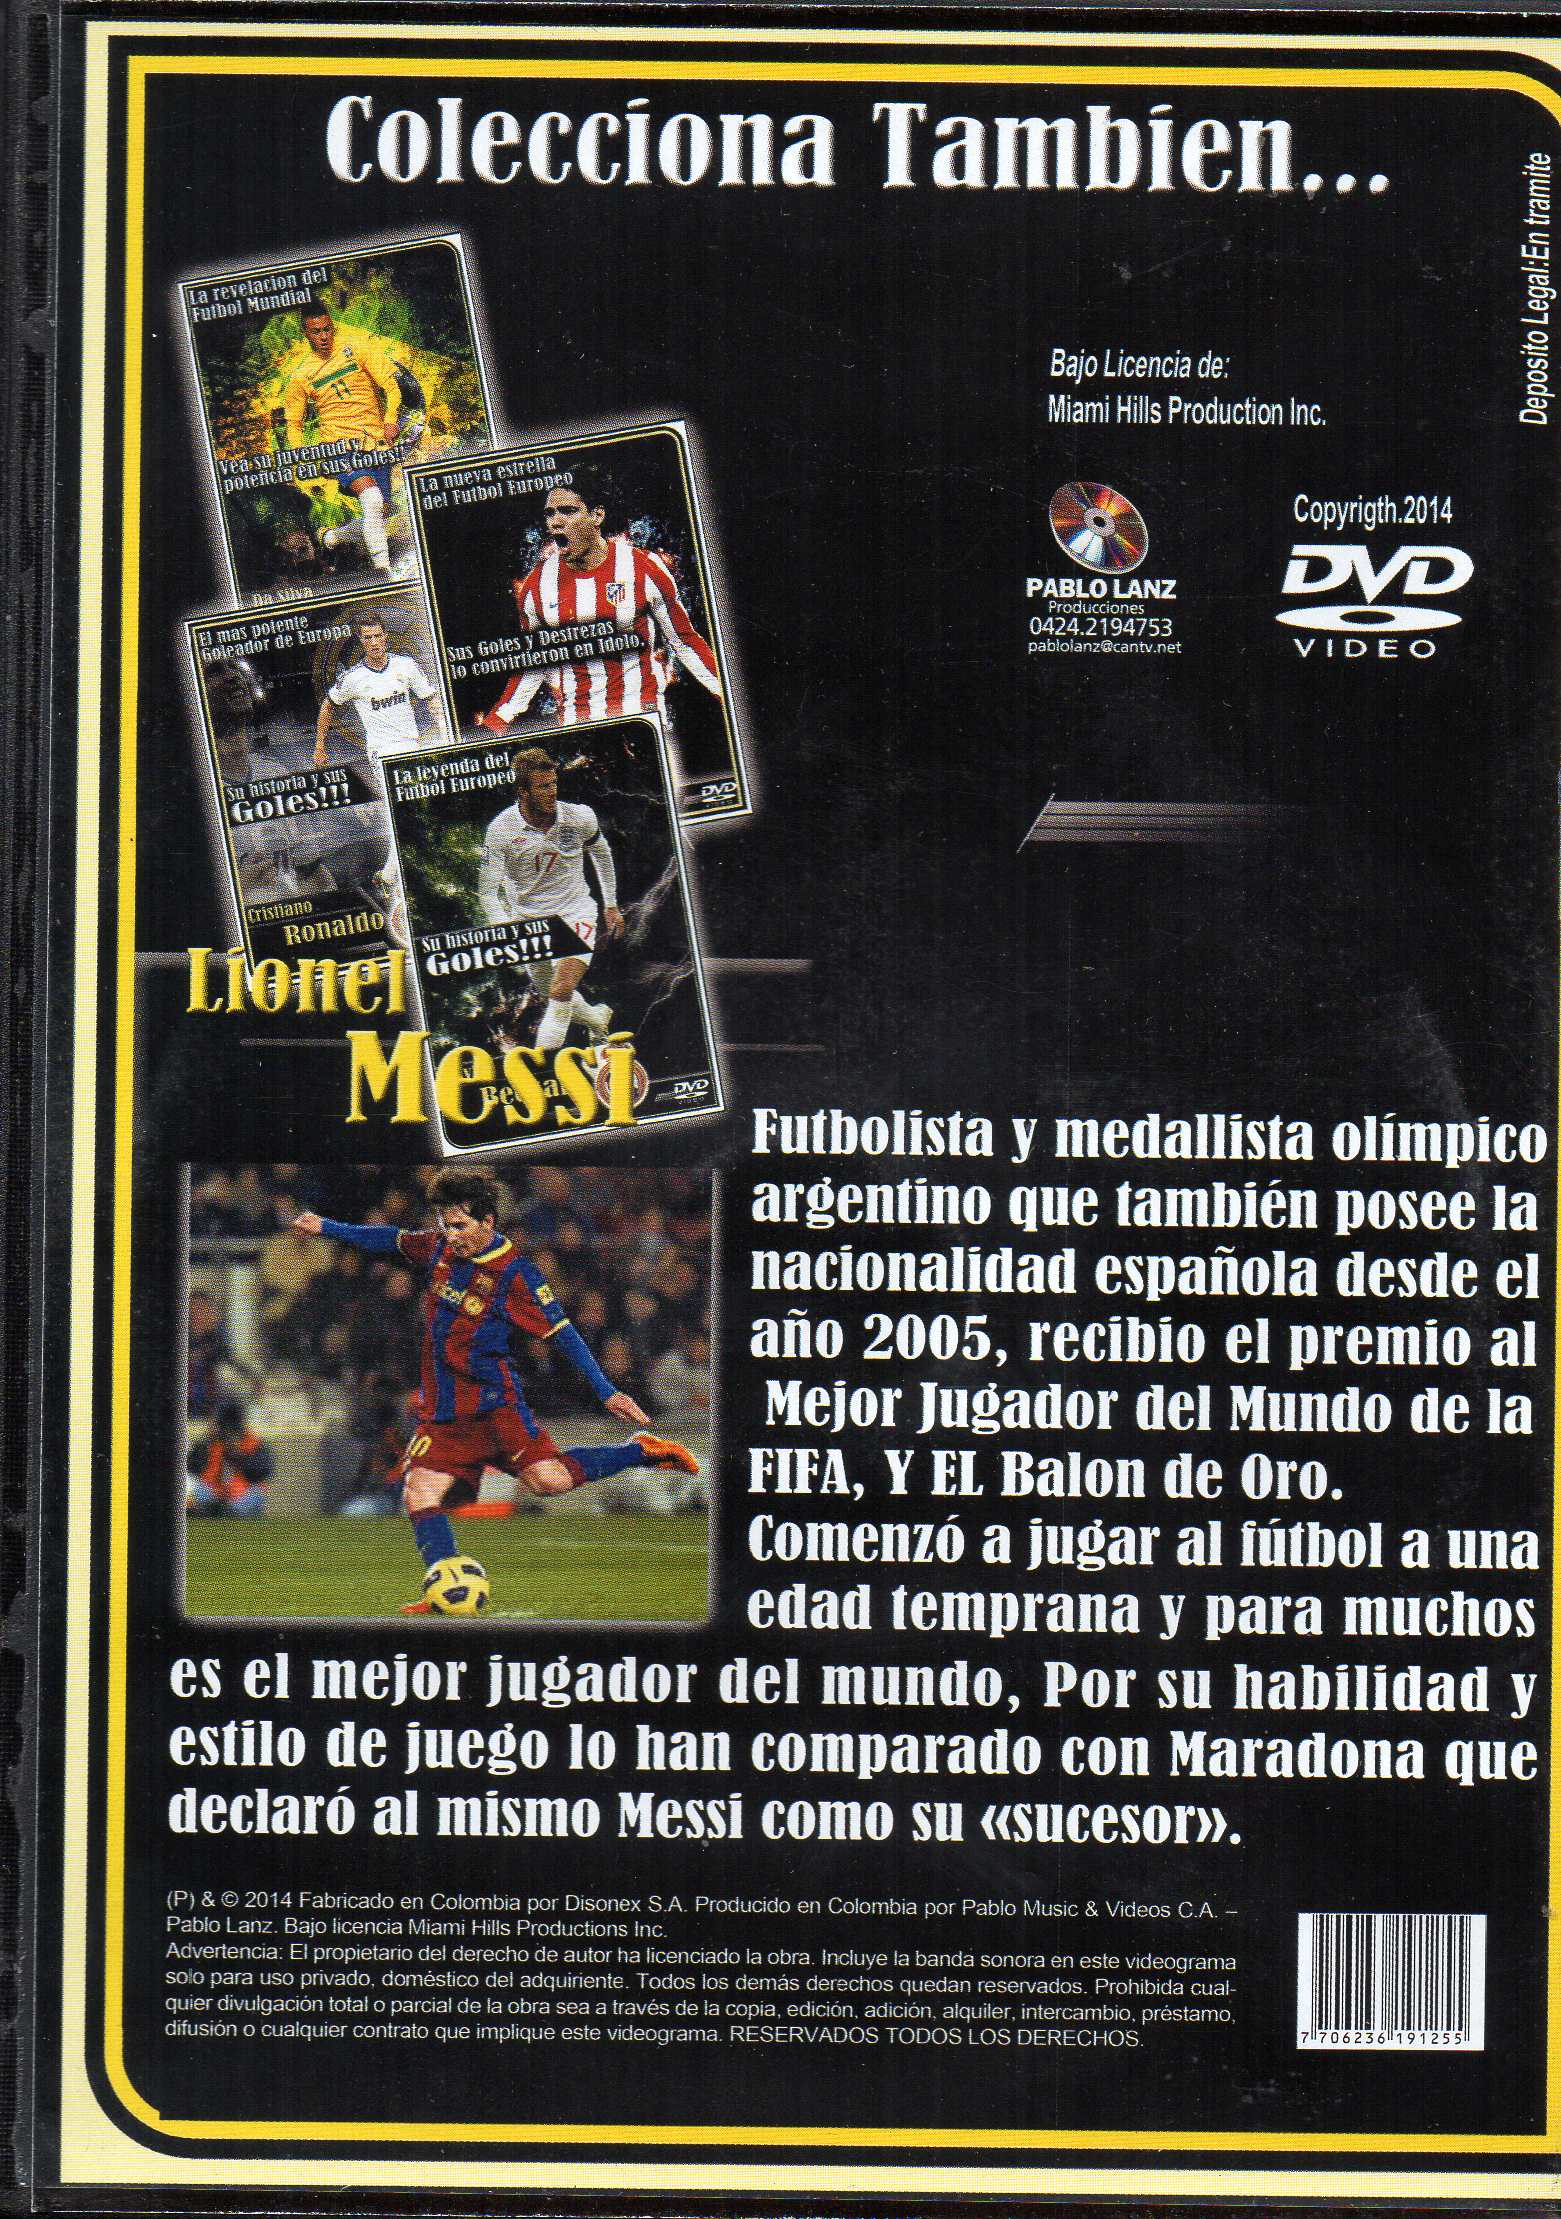 LIONEL MESSI EL JUGADOR DE LOS RECORDS / DVD